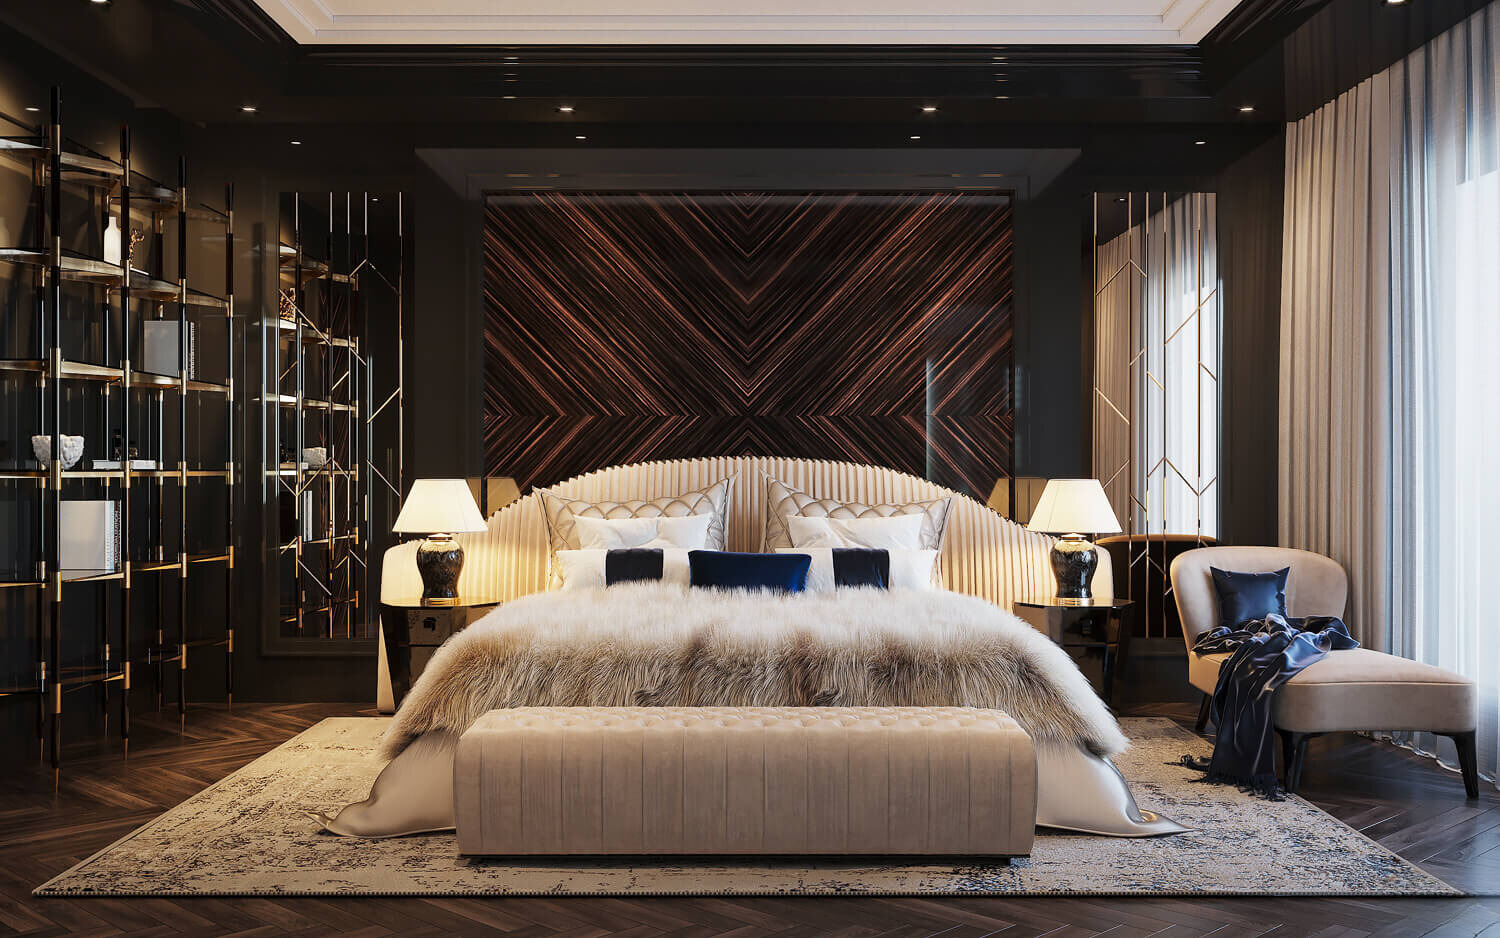 Mẫu phòng ngủ luxury nổi bật với hiệu ứng ánh kim xa xỉ, hào nhoáng